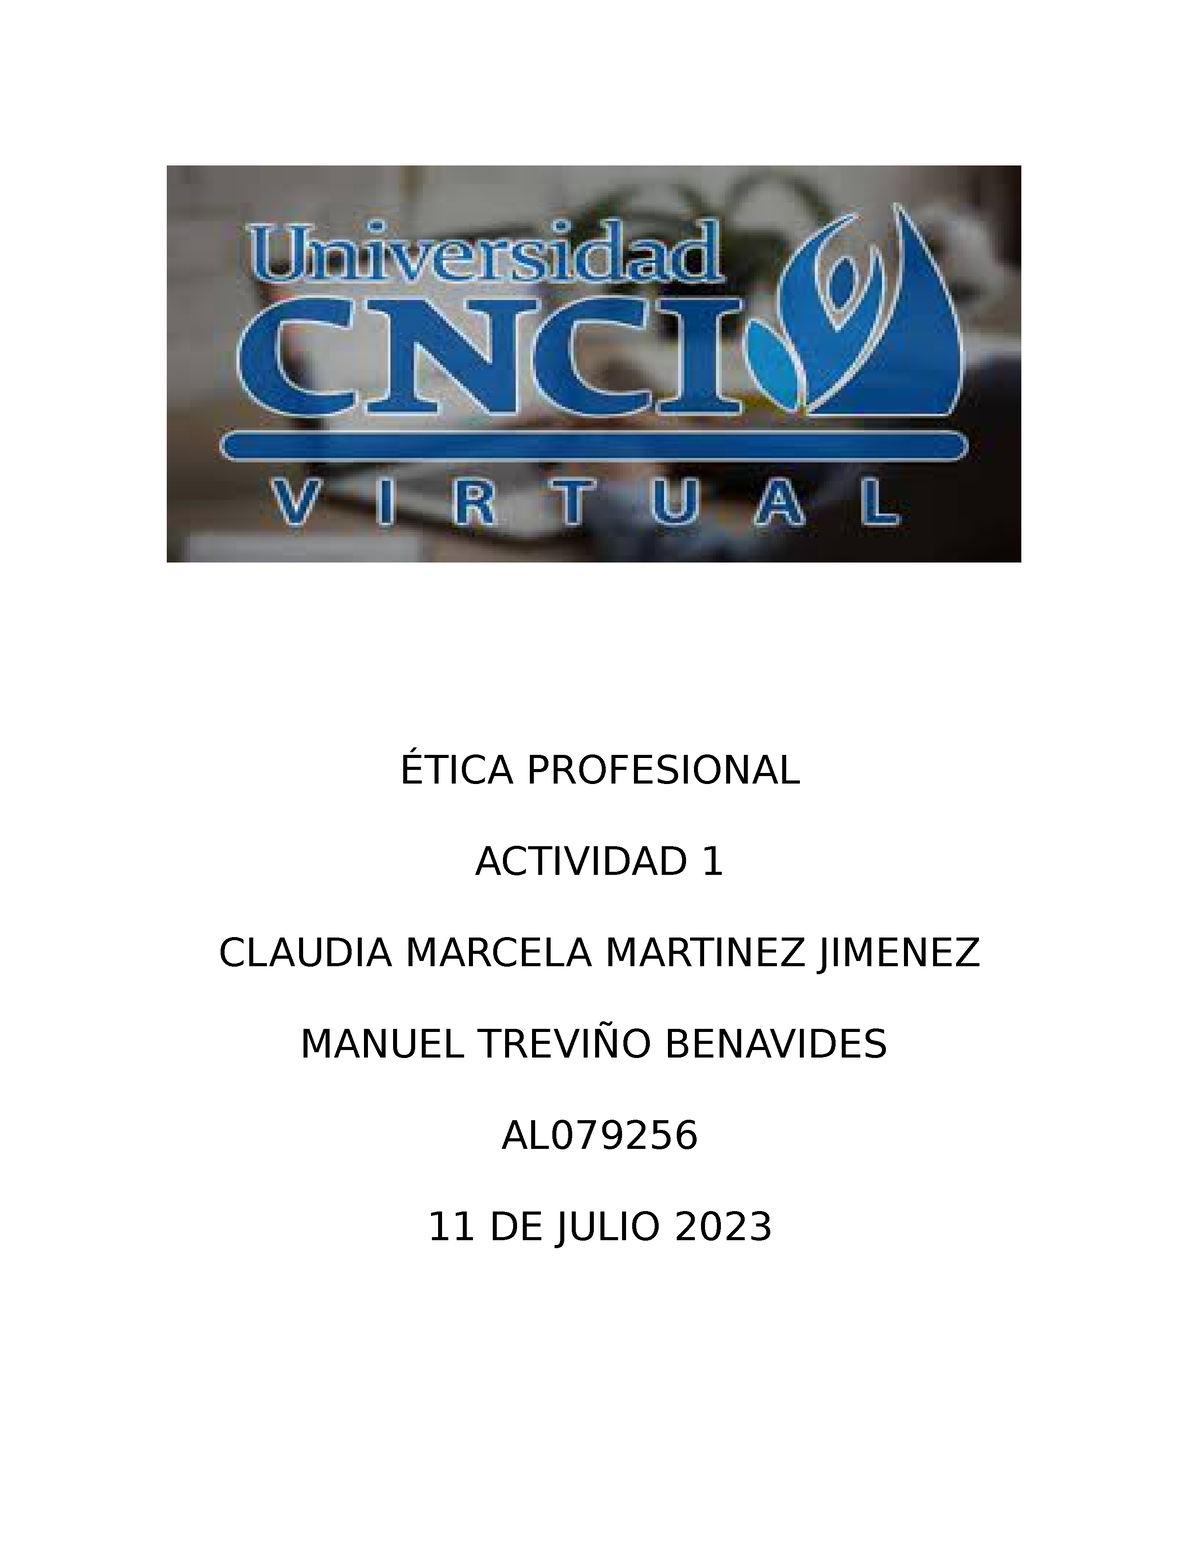 Ética Profesional Actividad 1 Ética Profesional Actividad 1 Claudia Marcela Martinez Jimenez 0976